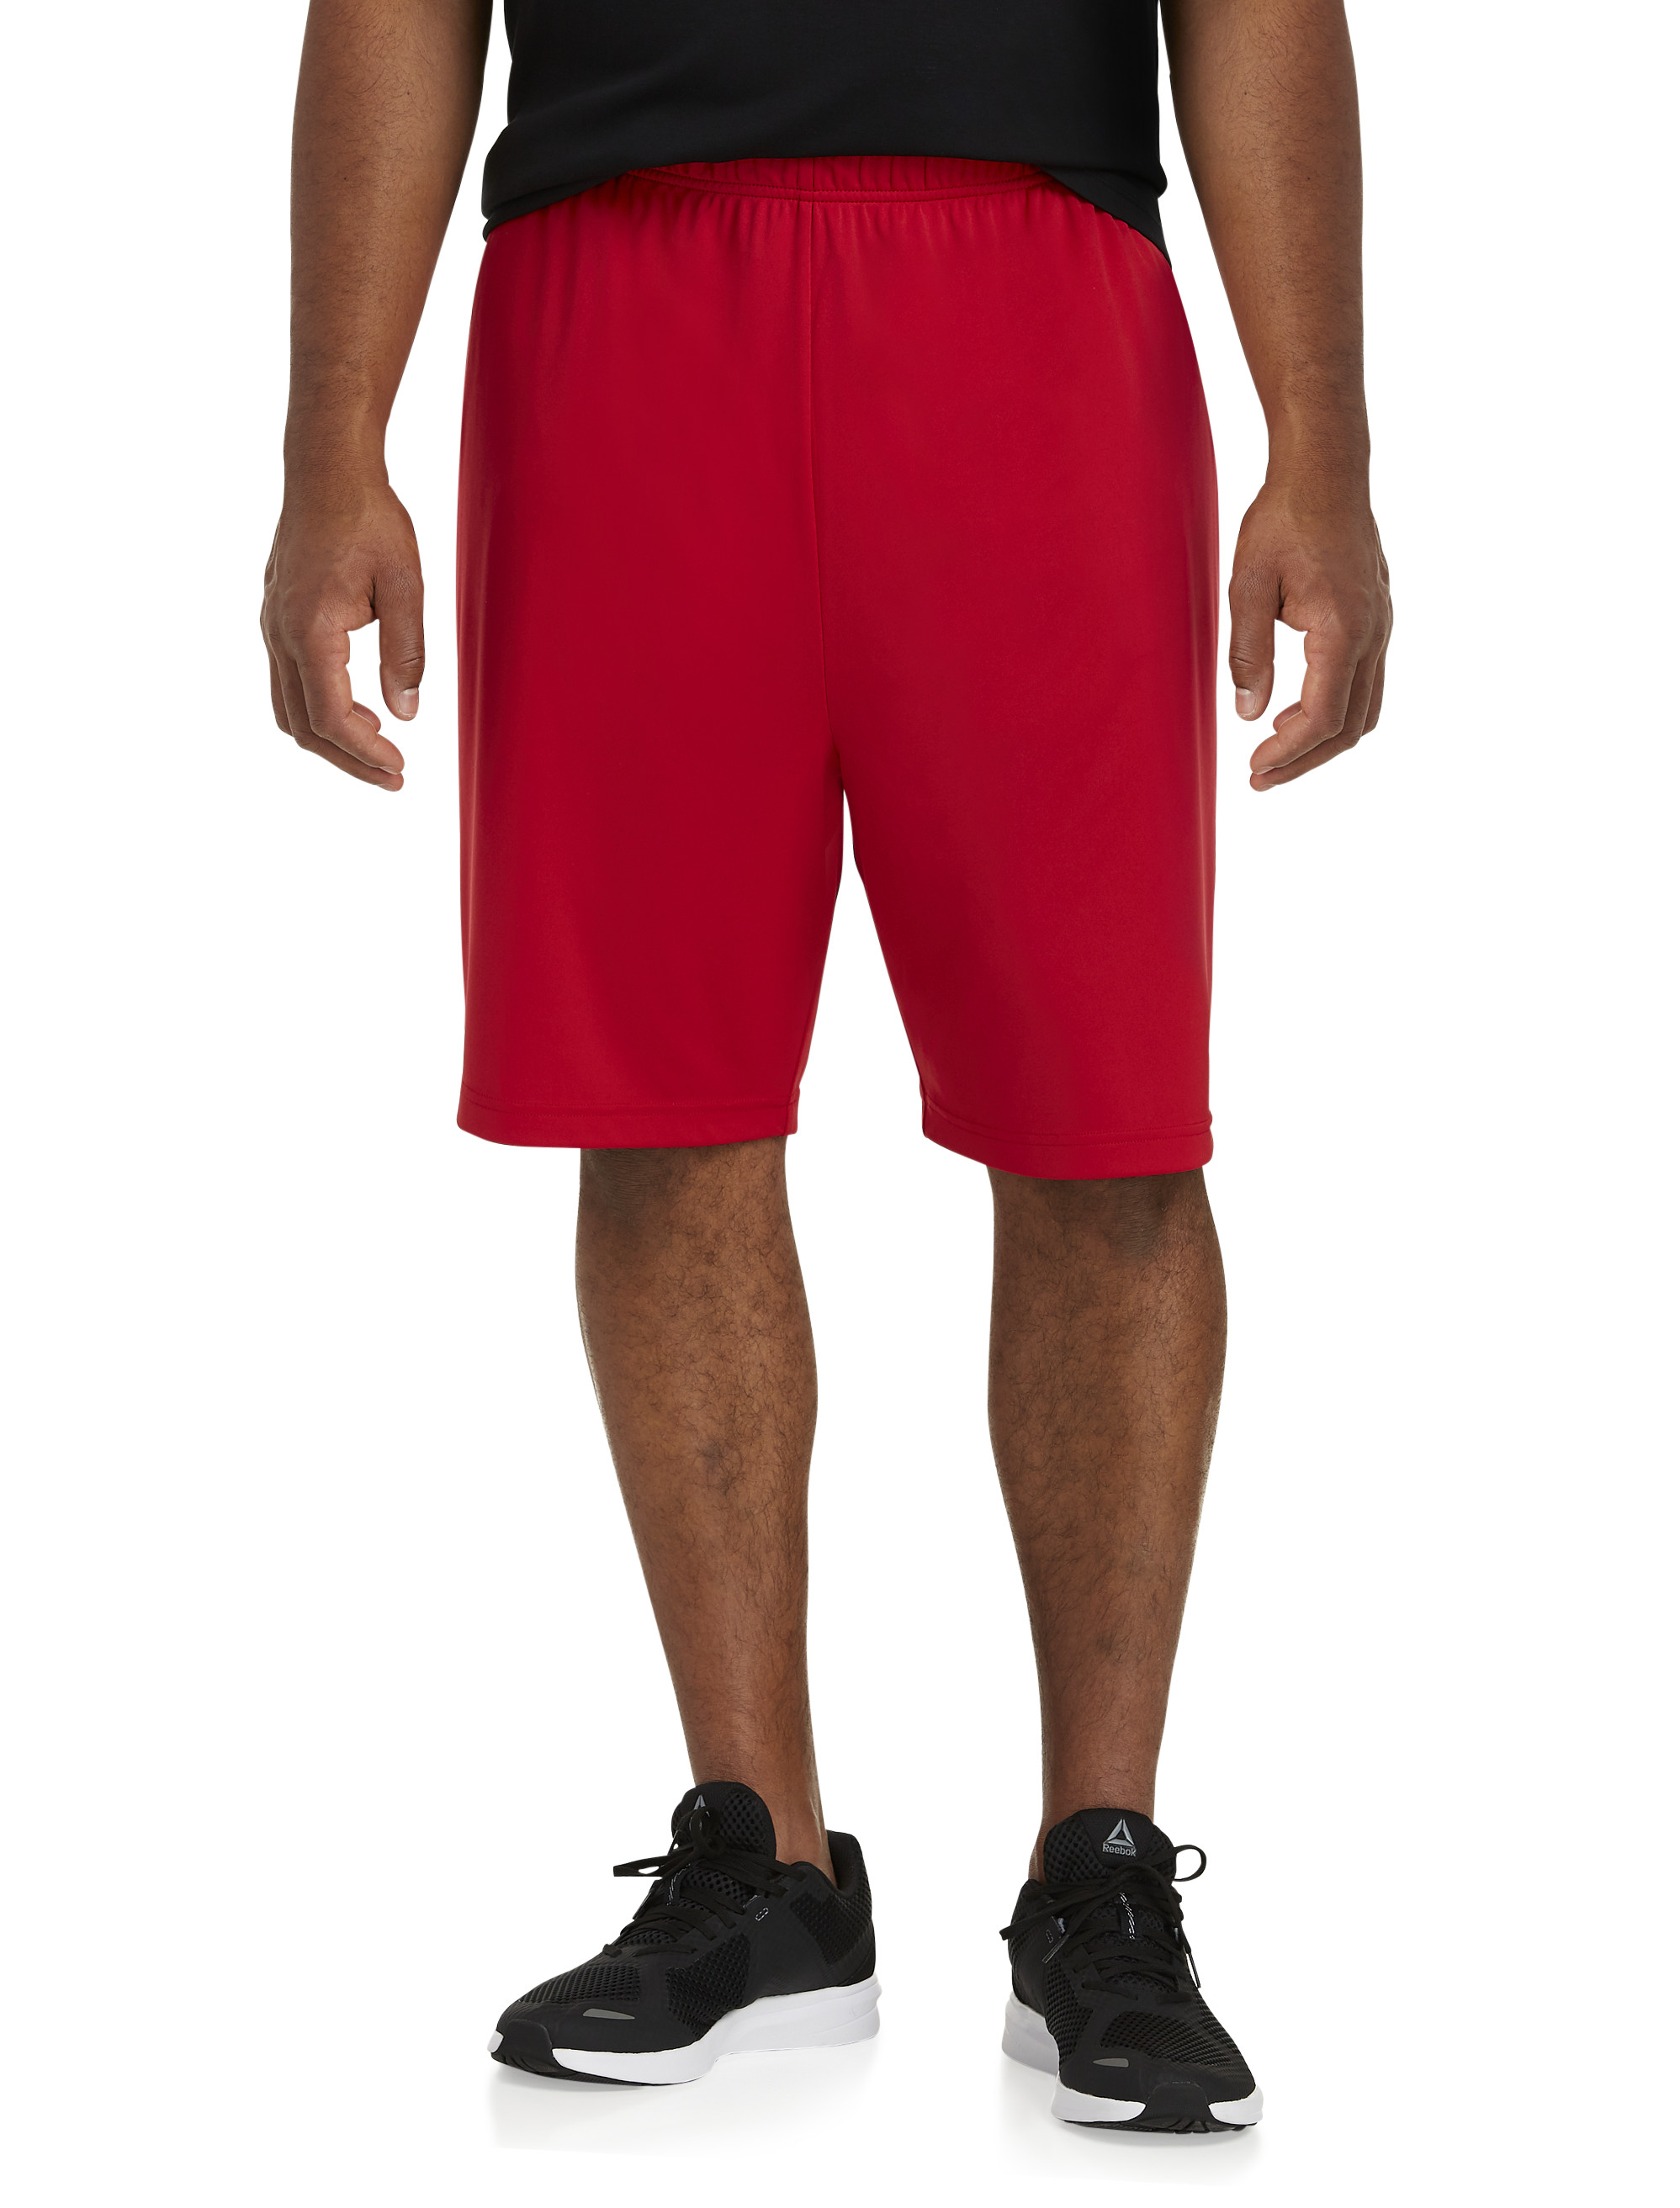 Big + Tall Basketball Shorts and Athletic Shorts | DXL